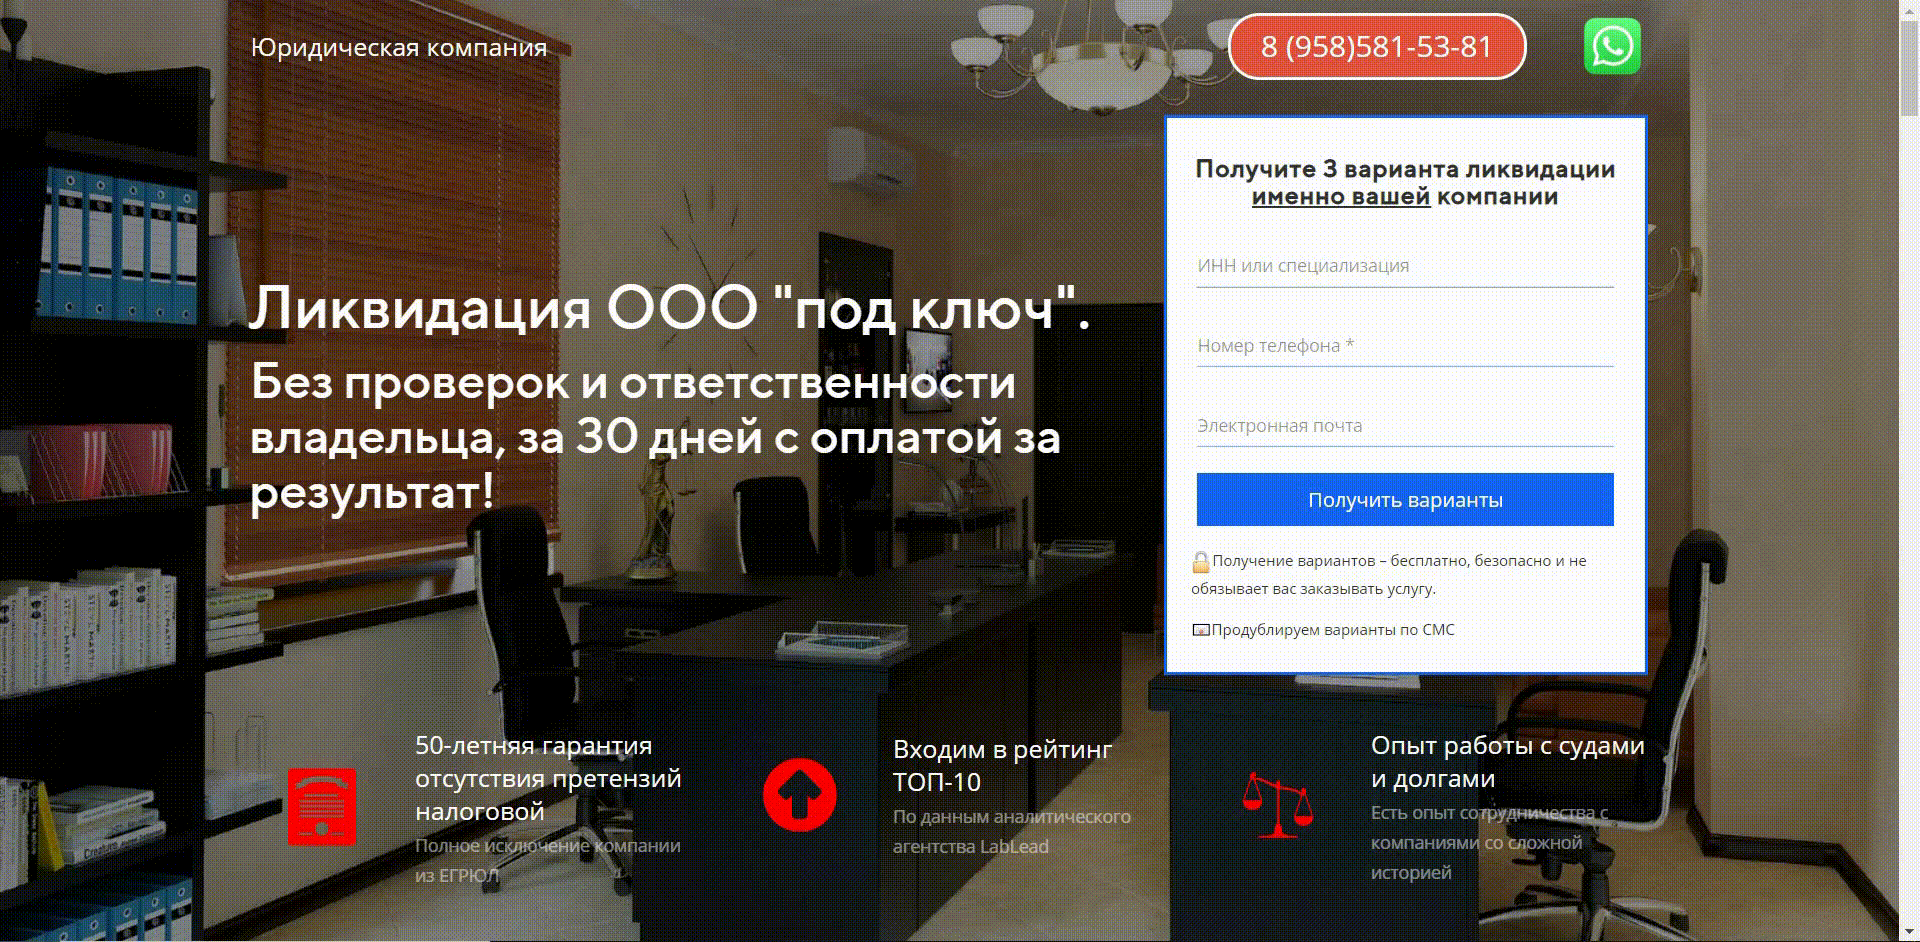 Яндекс.Директ для юристов – пример связок